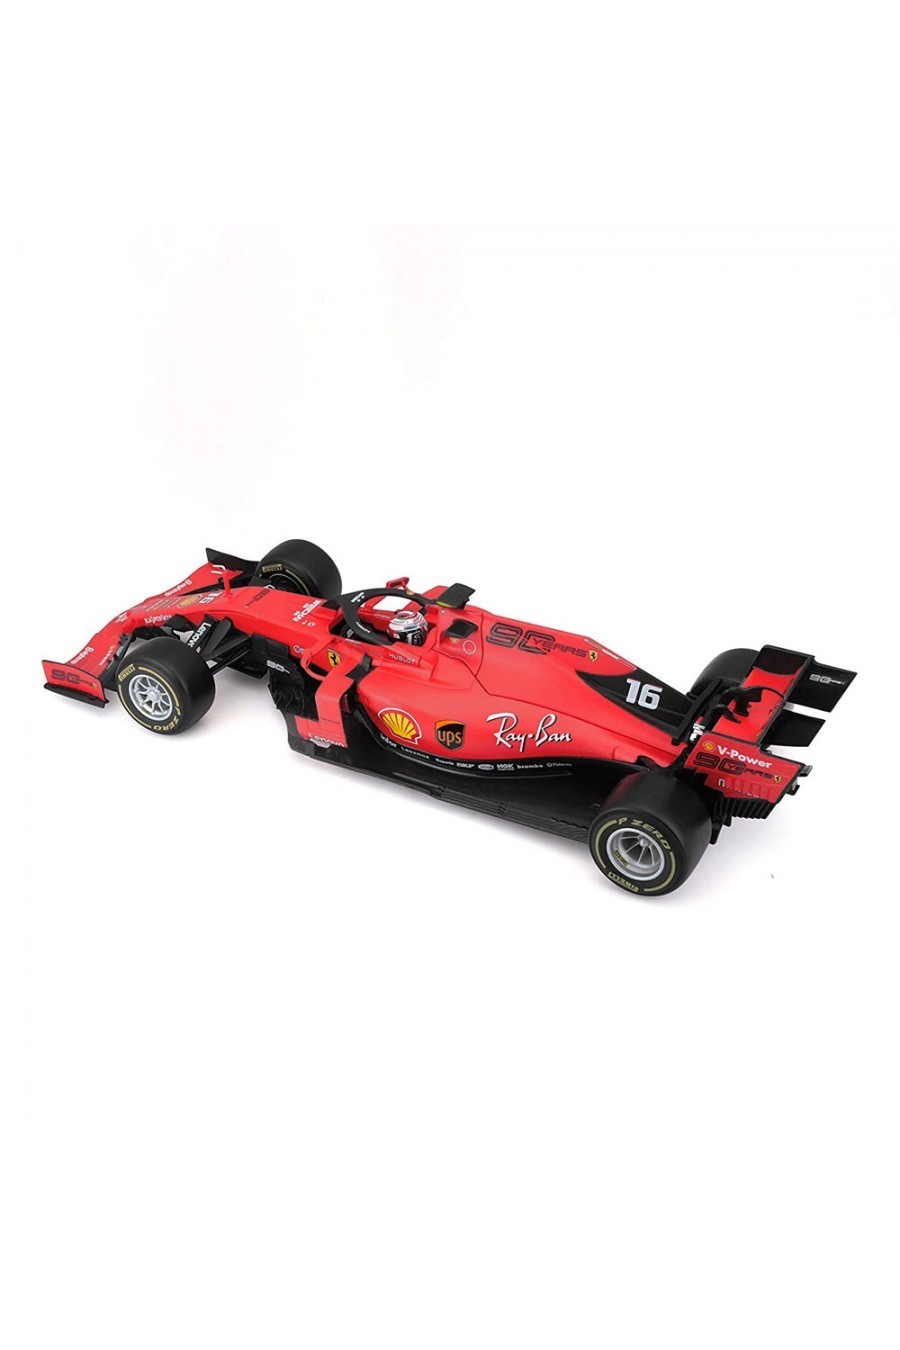 Miniatura 1:18 Coche Scuderia Ferrari SF90 2019 'Charles